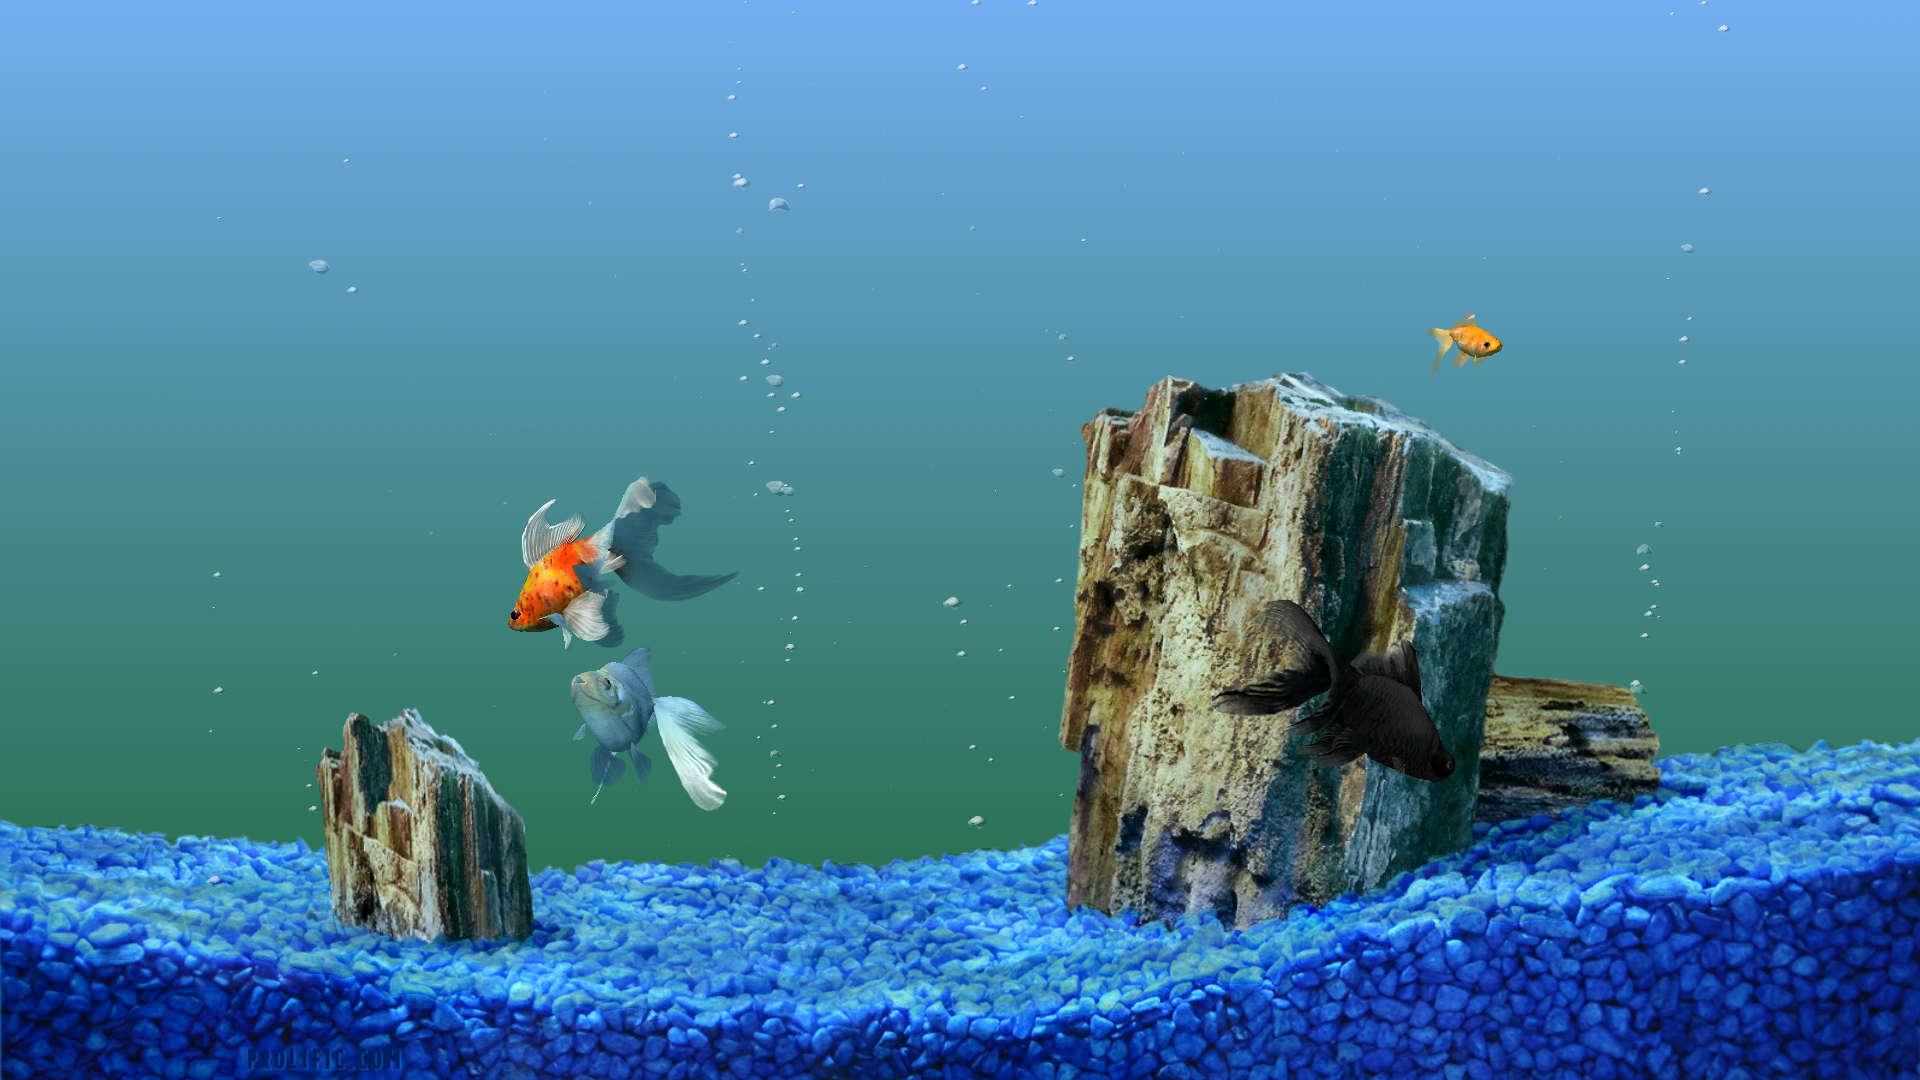 Desktop Backgrounds Fish Tank Moving Photo - Desktop Wallpaper Hd Aquarium - HD Wallpaper 